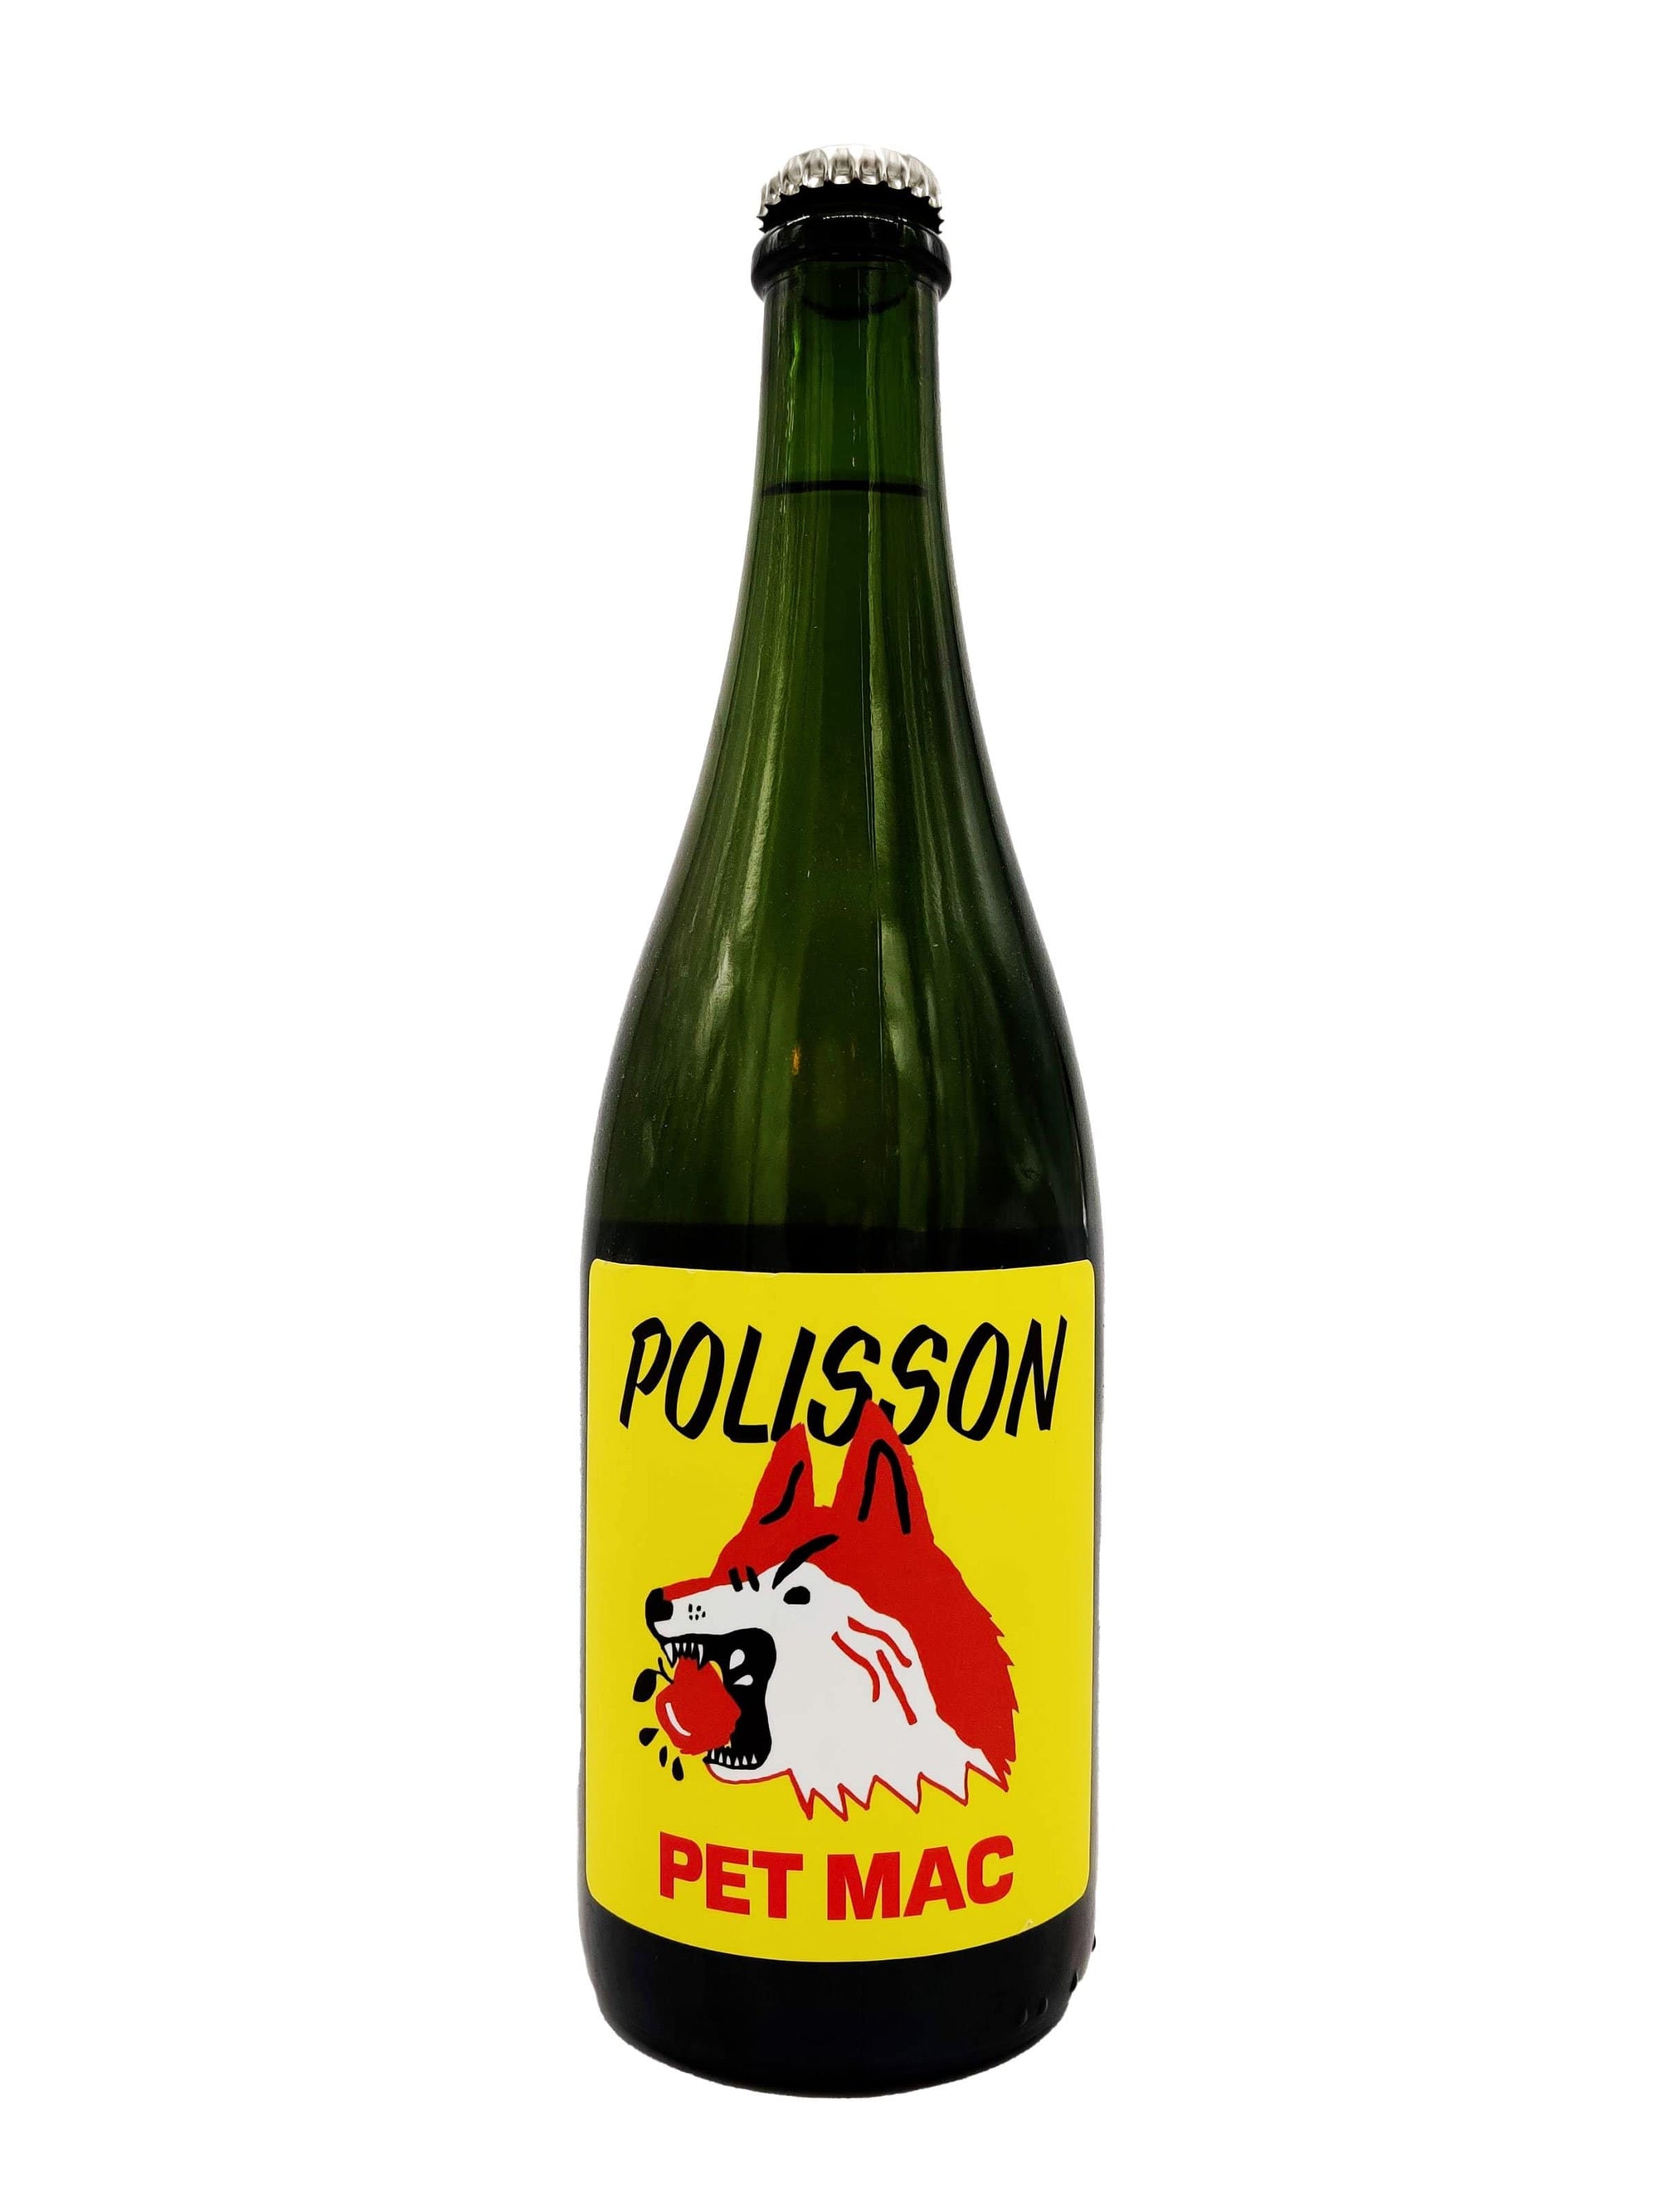 Pet Mac - Cidre Mousseux des Cidres Polisson